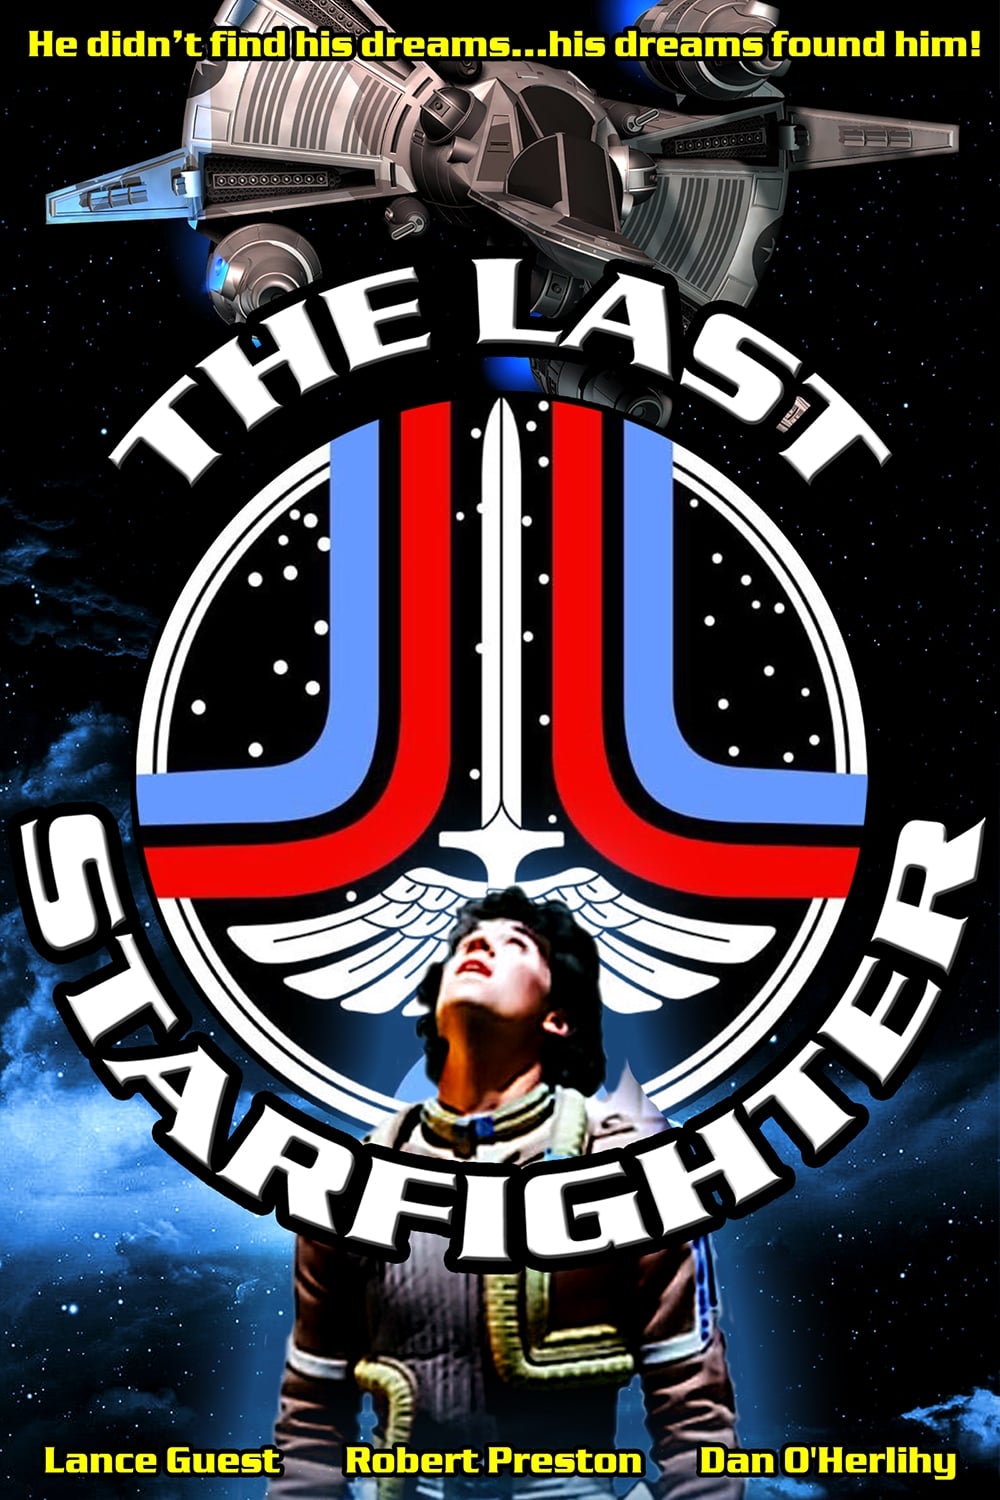 1984 The Last Starfighter